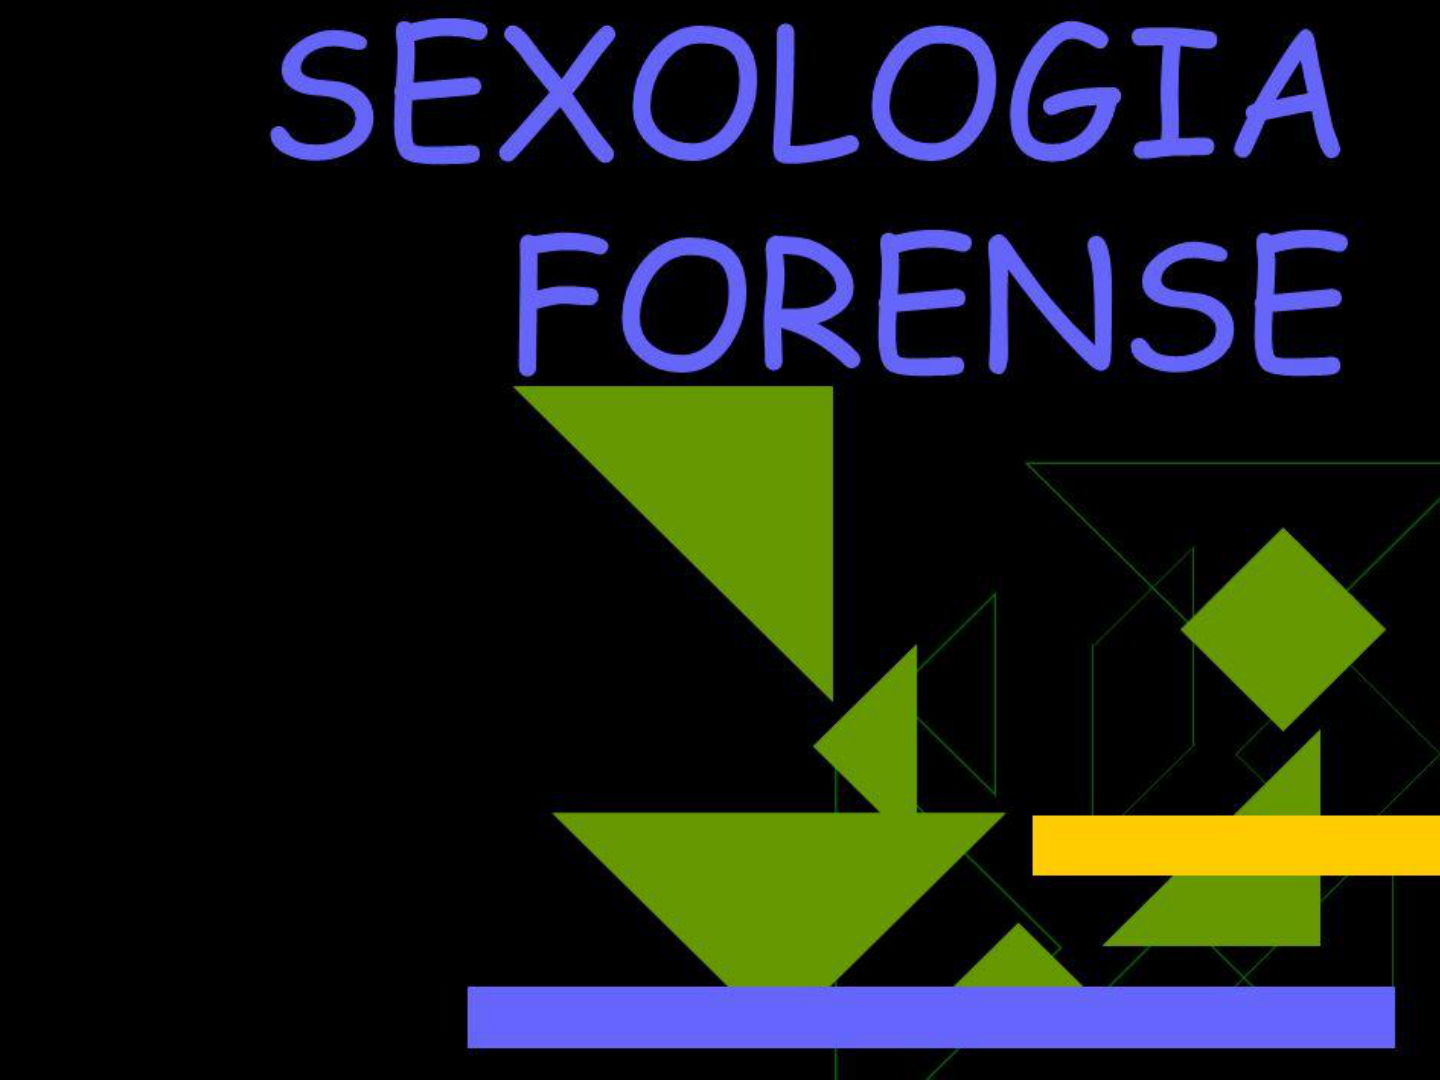 Sexologia Forense.pdf